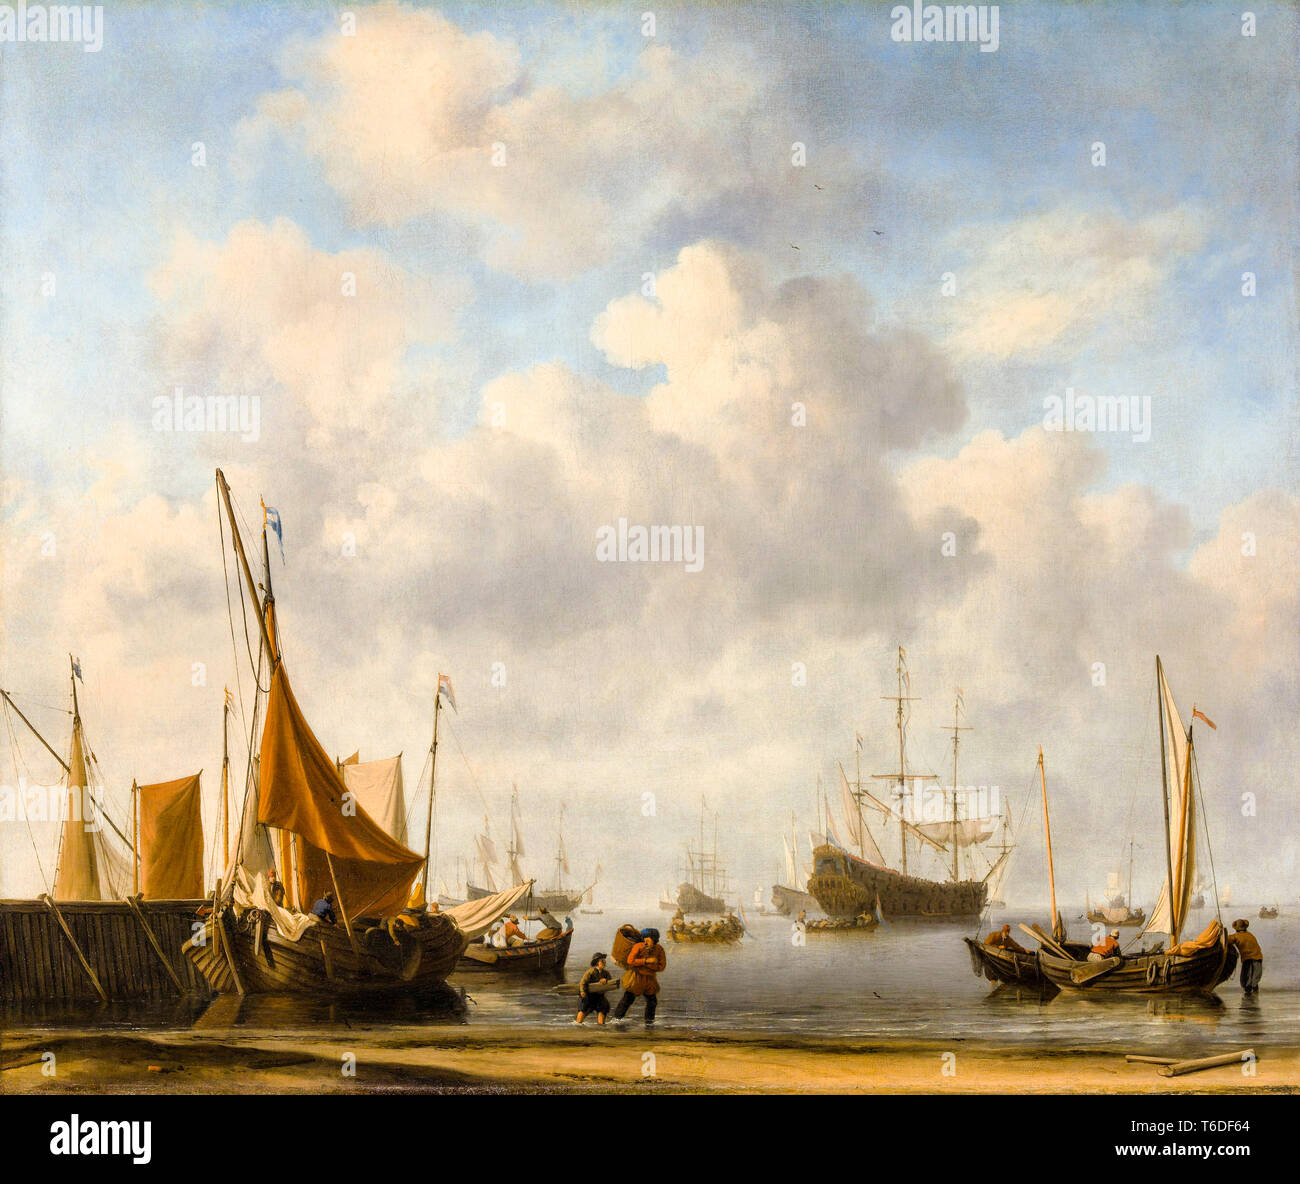 Entrée d'un port néerlandais, ch. 1665, la Dutch East India Company peinture de Willem van de Velde le jeune Banque D'Images